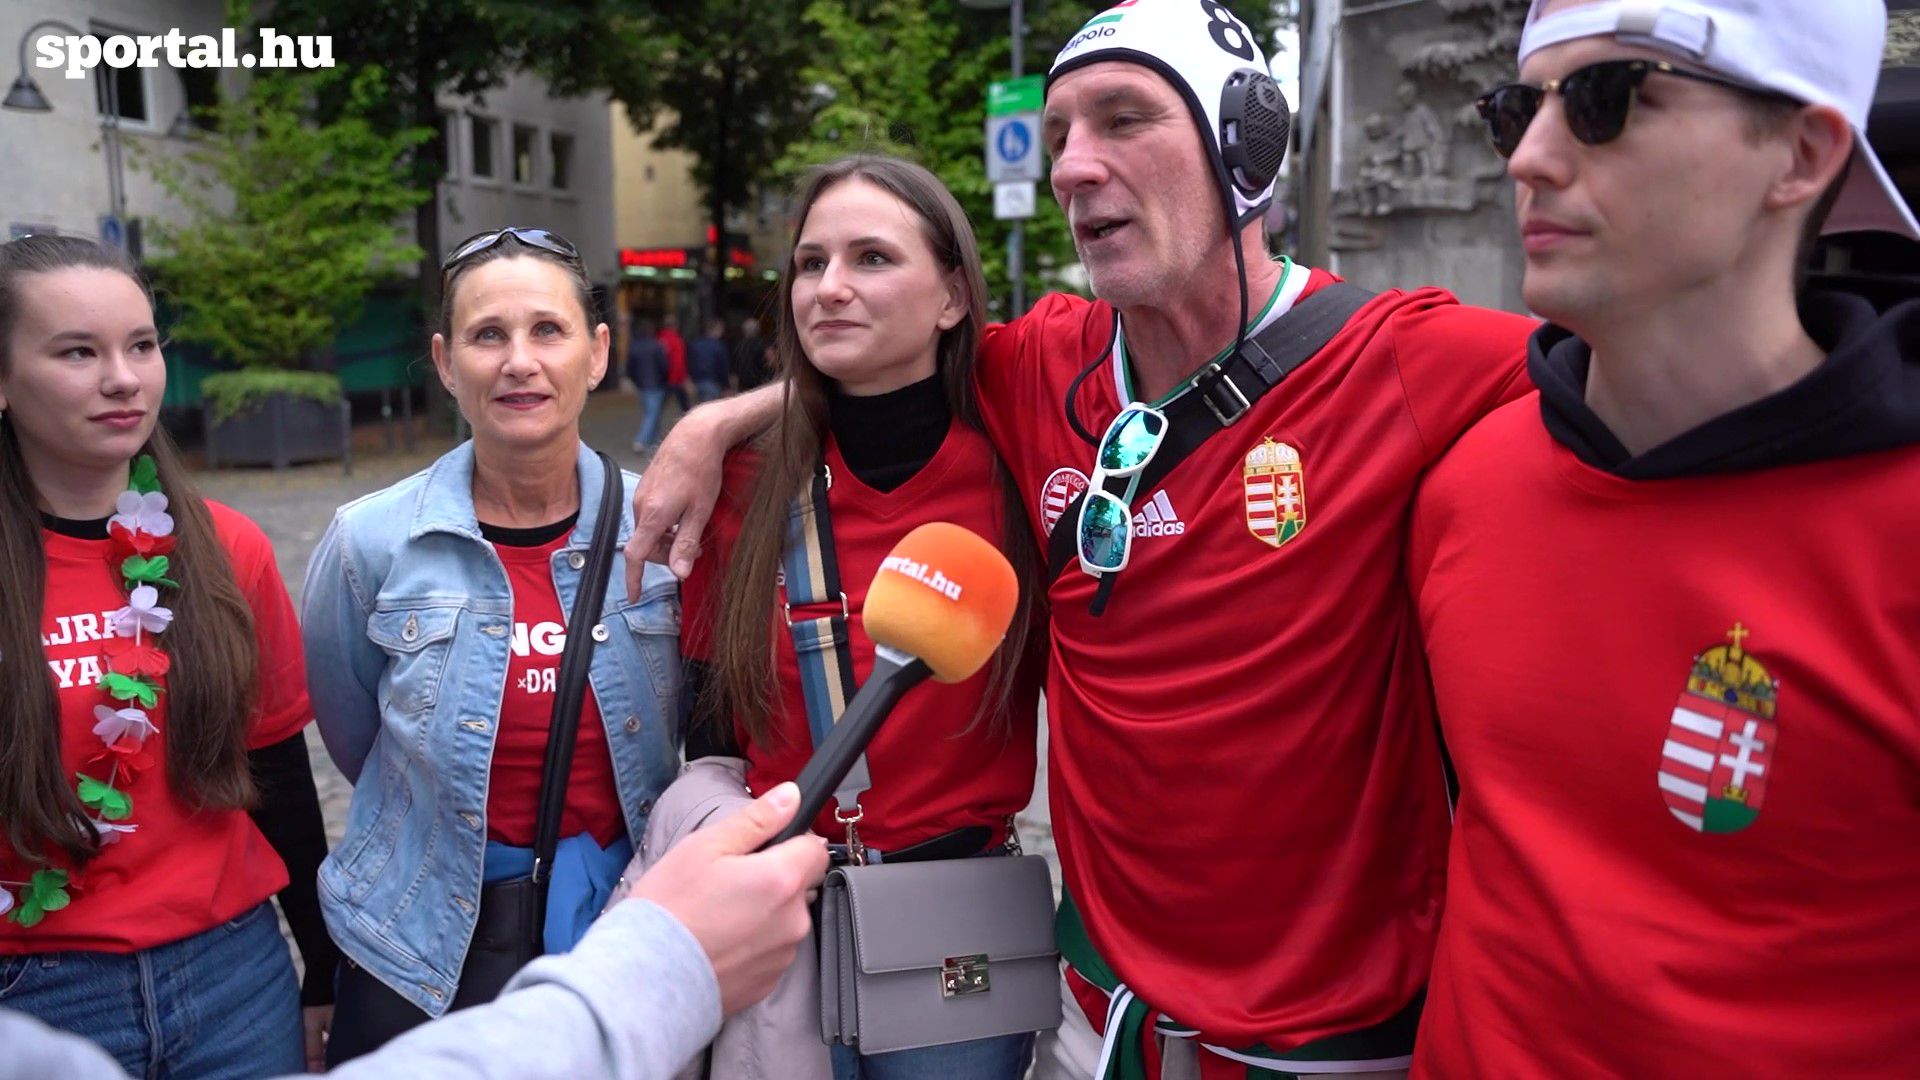 Győzelemre, továbbjutásra, és nagy ünneplésre készülnek a magyar szurkolók Kölnben